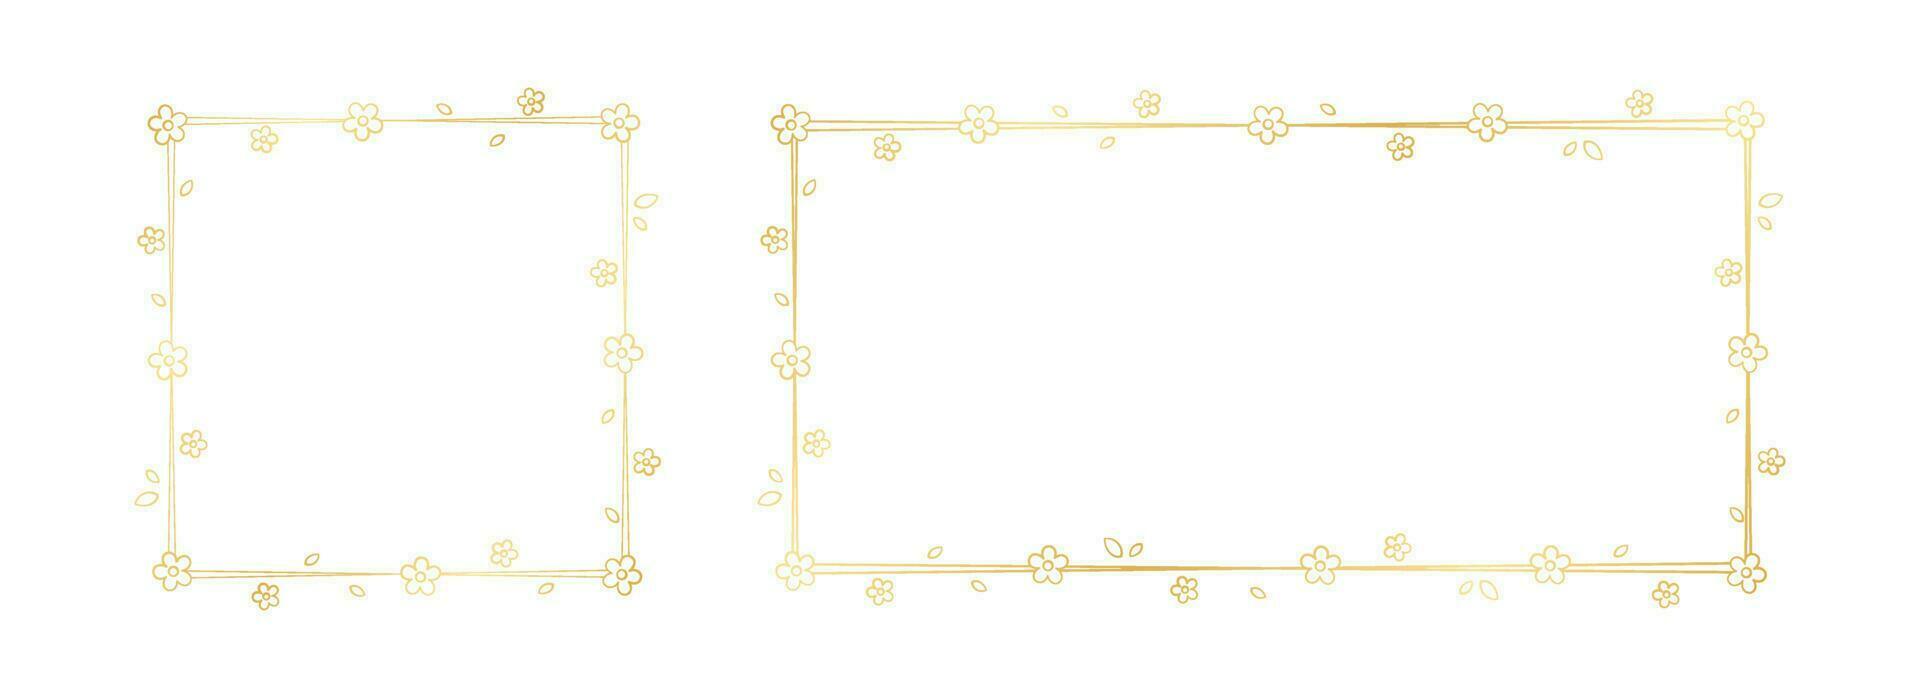 Gold Floral Frame Outline Doodle Set. Spring border template, flourish design element for wedding, greeting card. vector